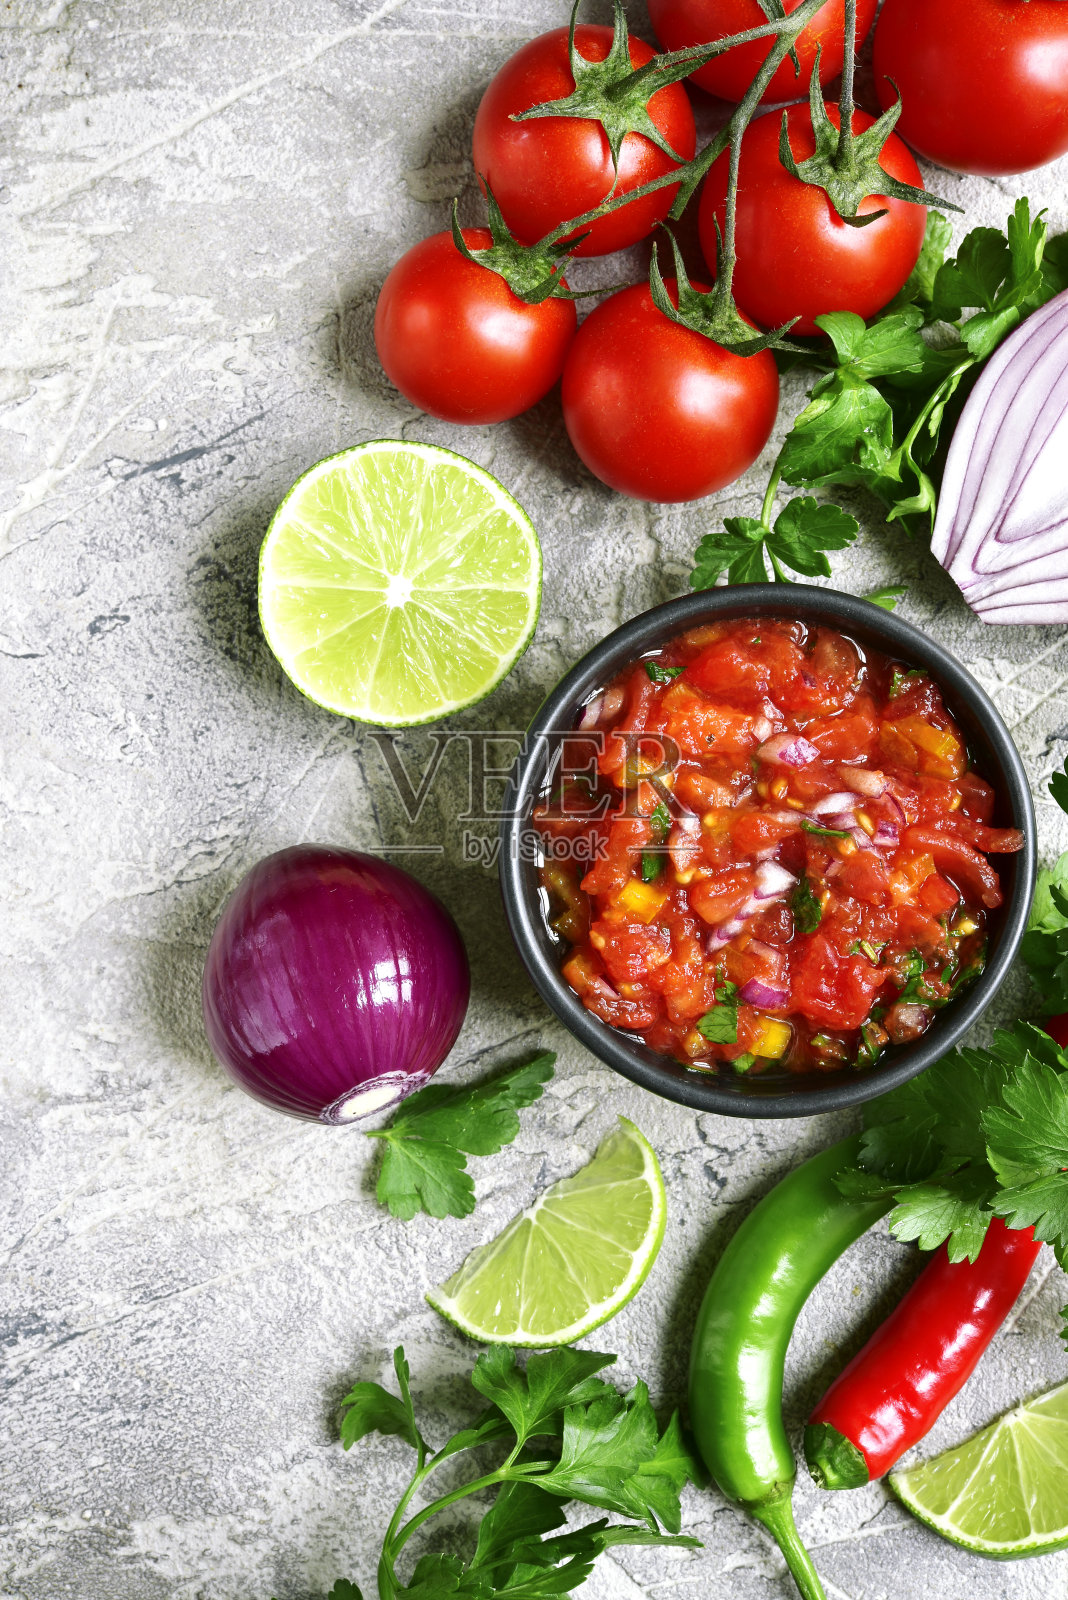 制作番茄沙司(salsa roja)的原料——传统的墨西哥酱照片摄影图片